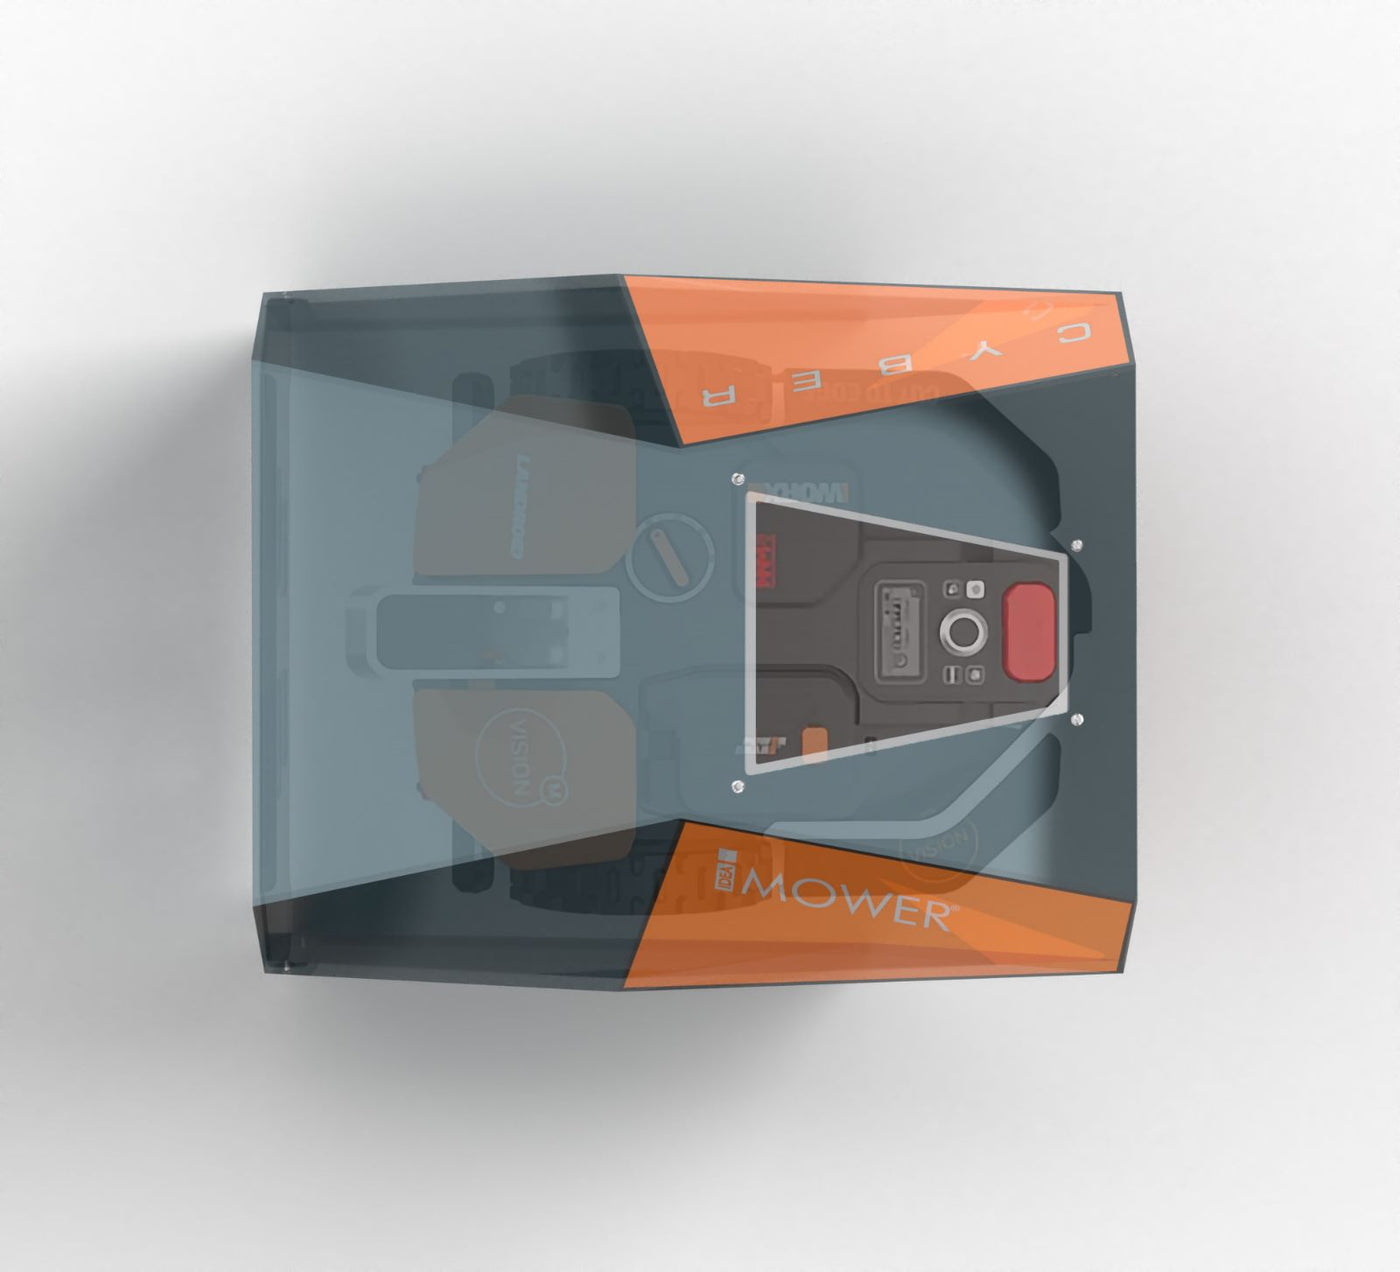 Futuristischer maehroboter garage: 'Cyber' Garage für WORX Landroid Vision